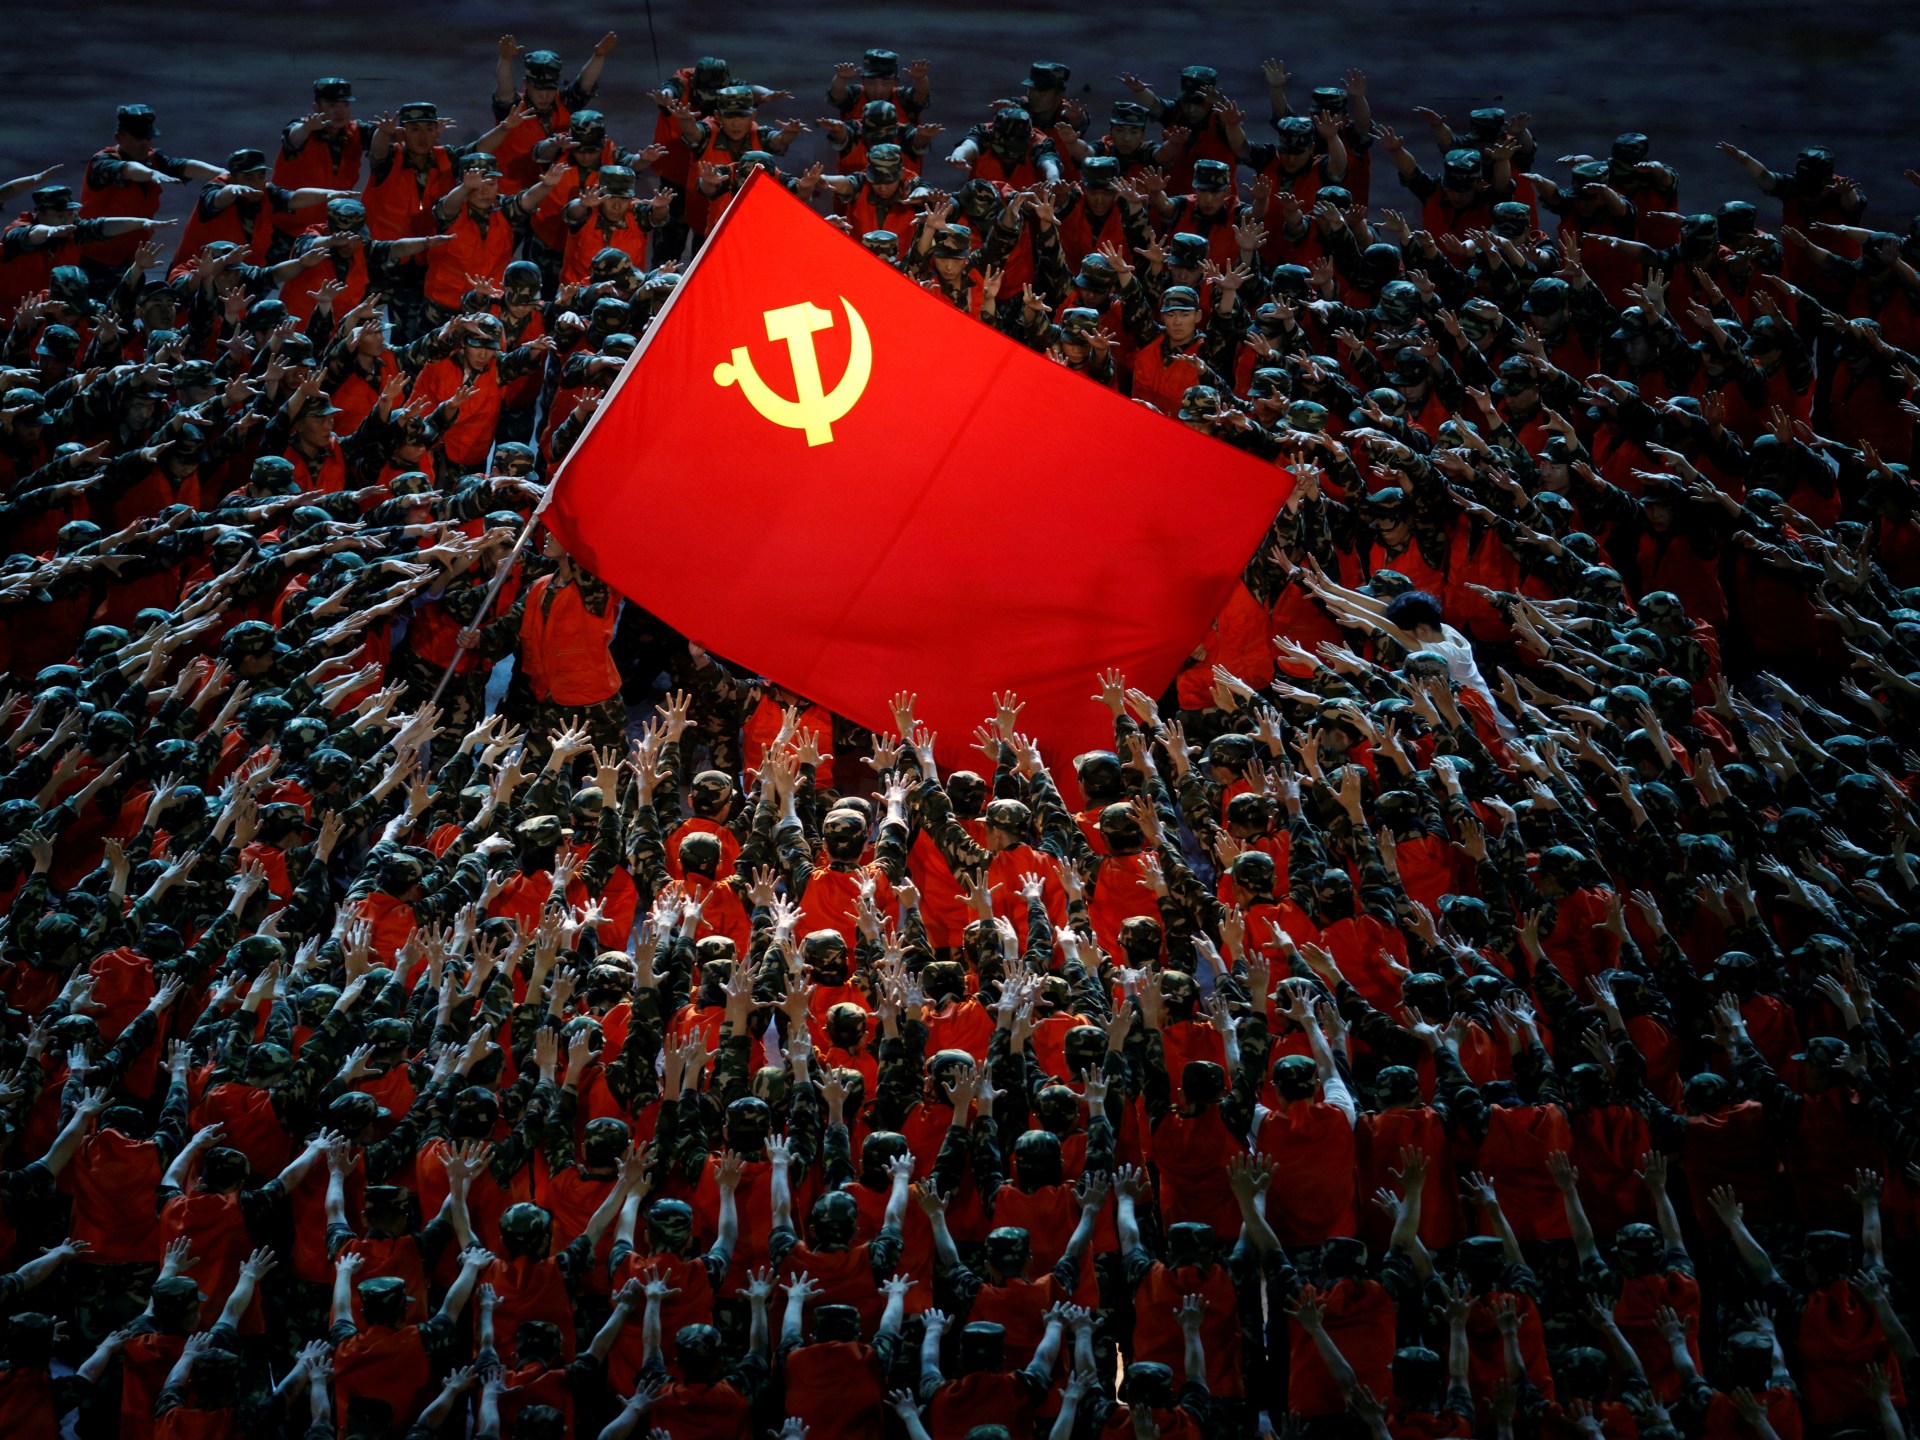 الشيوعية.. أيديولوجيا نشأت لنصرة العمال | الموسوعة – البوكس نيوز